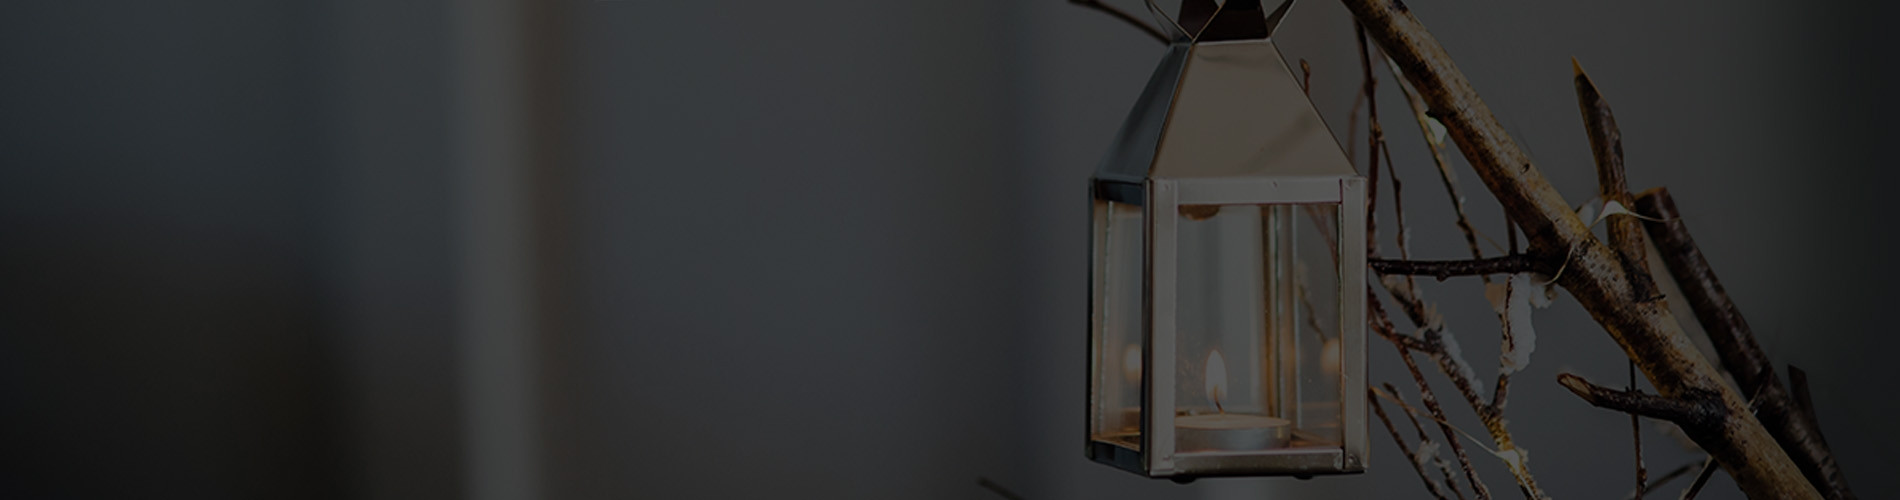 Designer Lanterns for Natural Lighting | Viva Lagoon